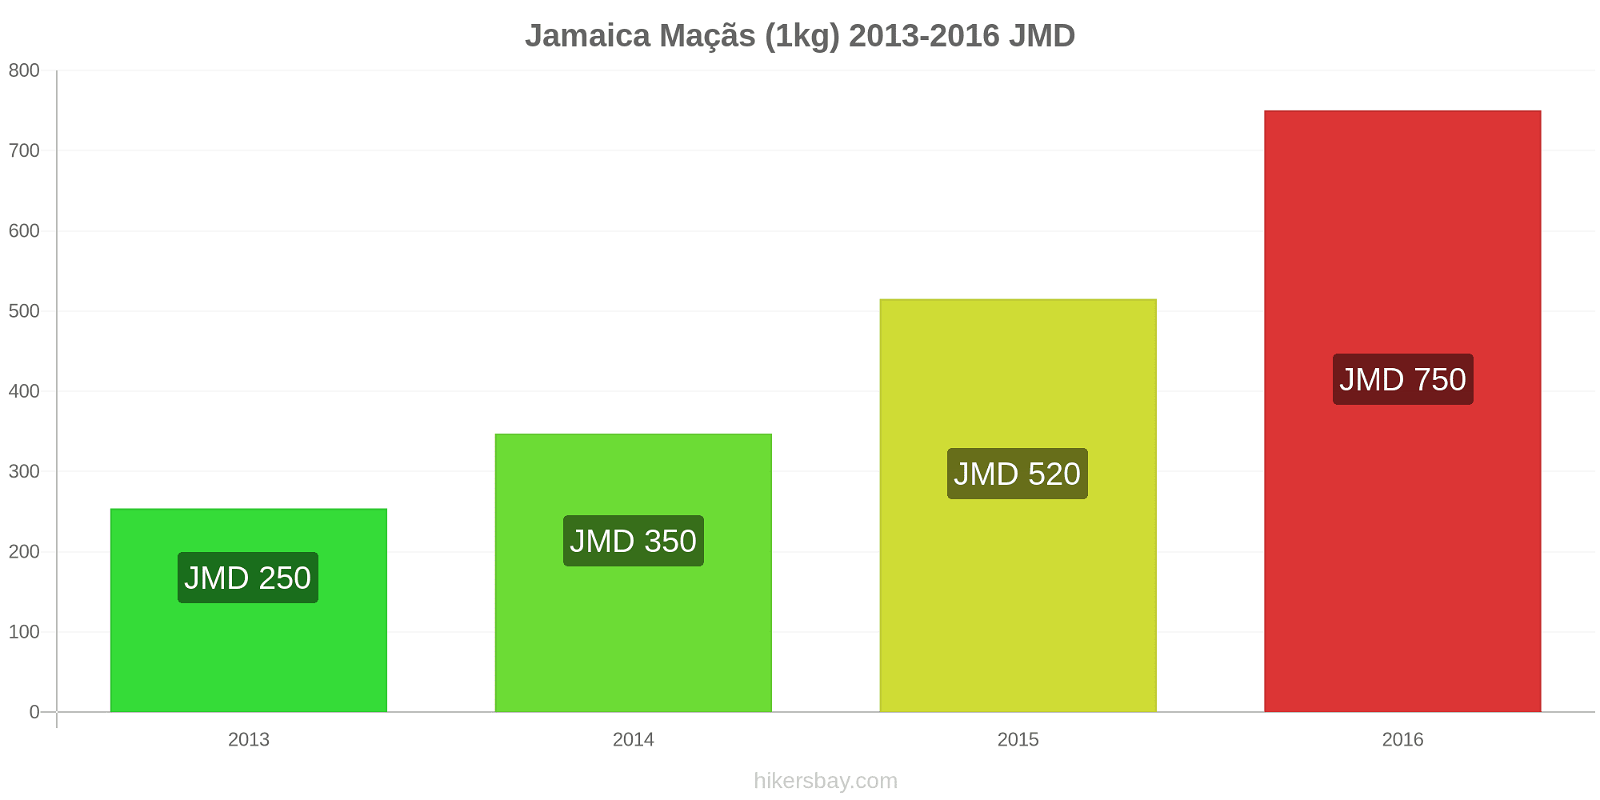 Jamaica variação de preço Maçãs (1kg) hikersbay.com